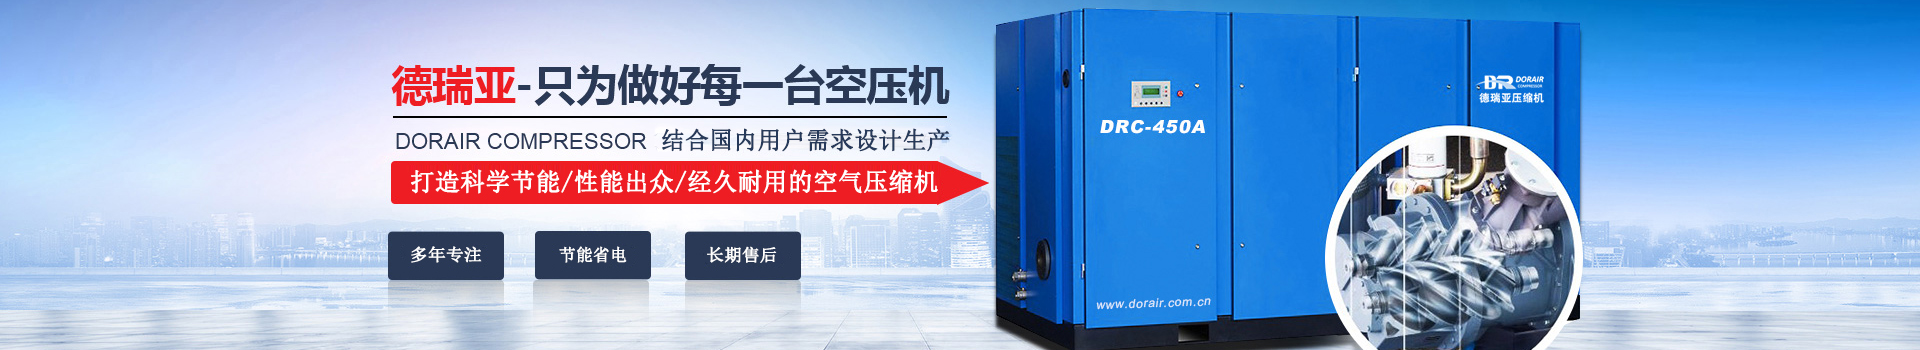 德瑞亚空压机，中国高品质空压机倡导者